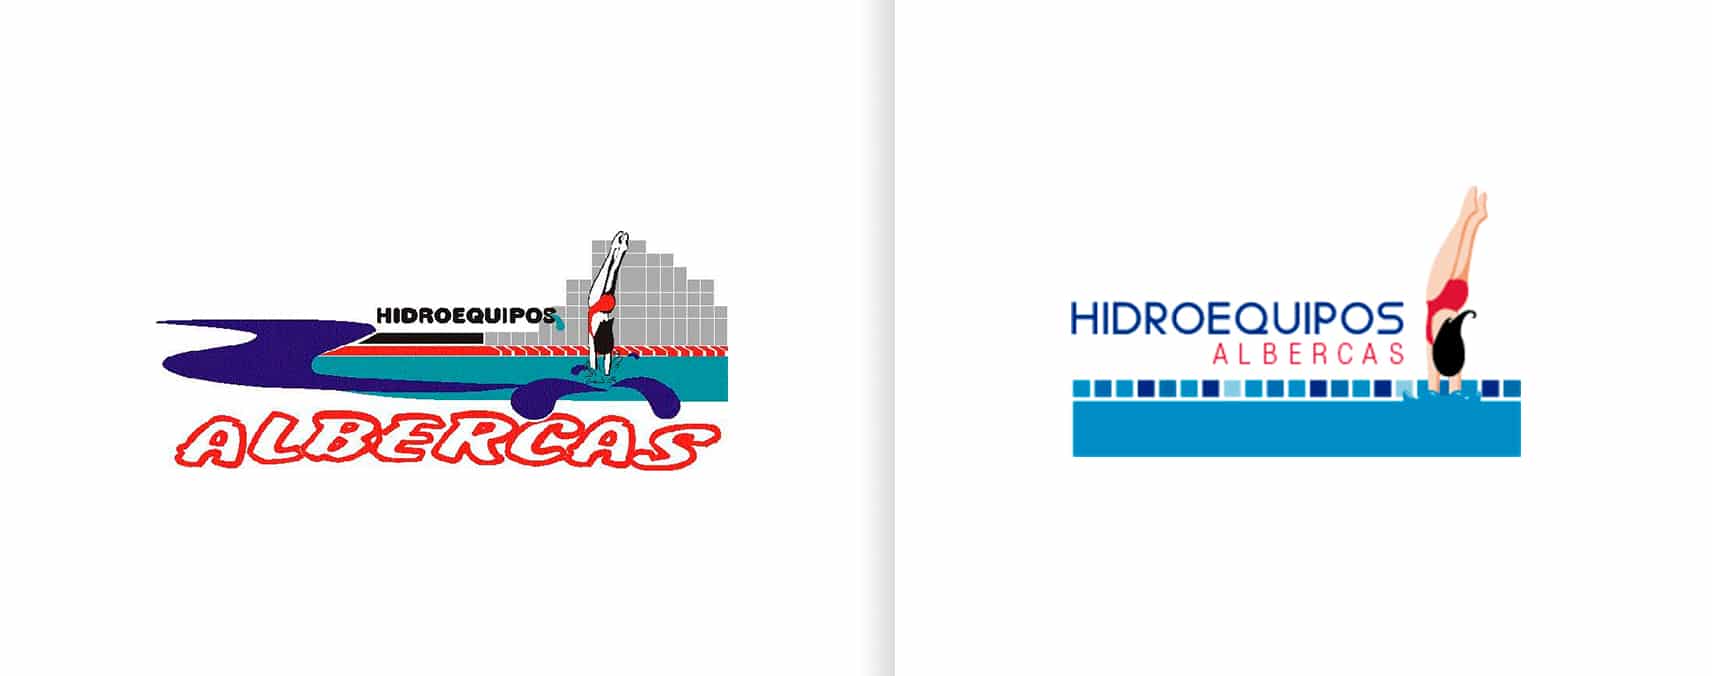 rediseño de logotipo hidroequipos albercas